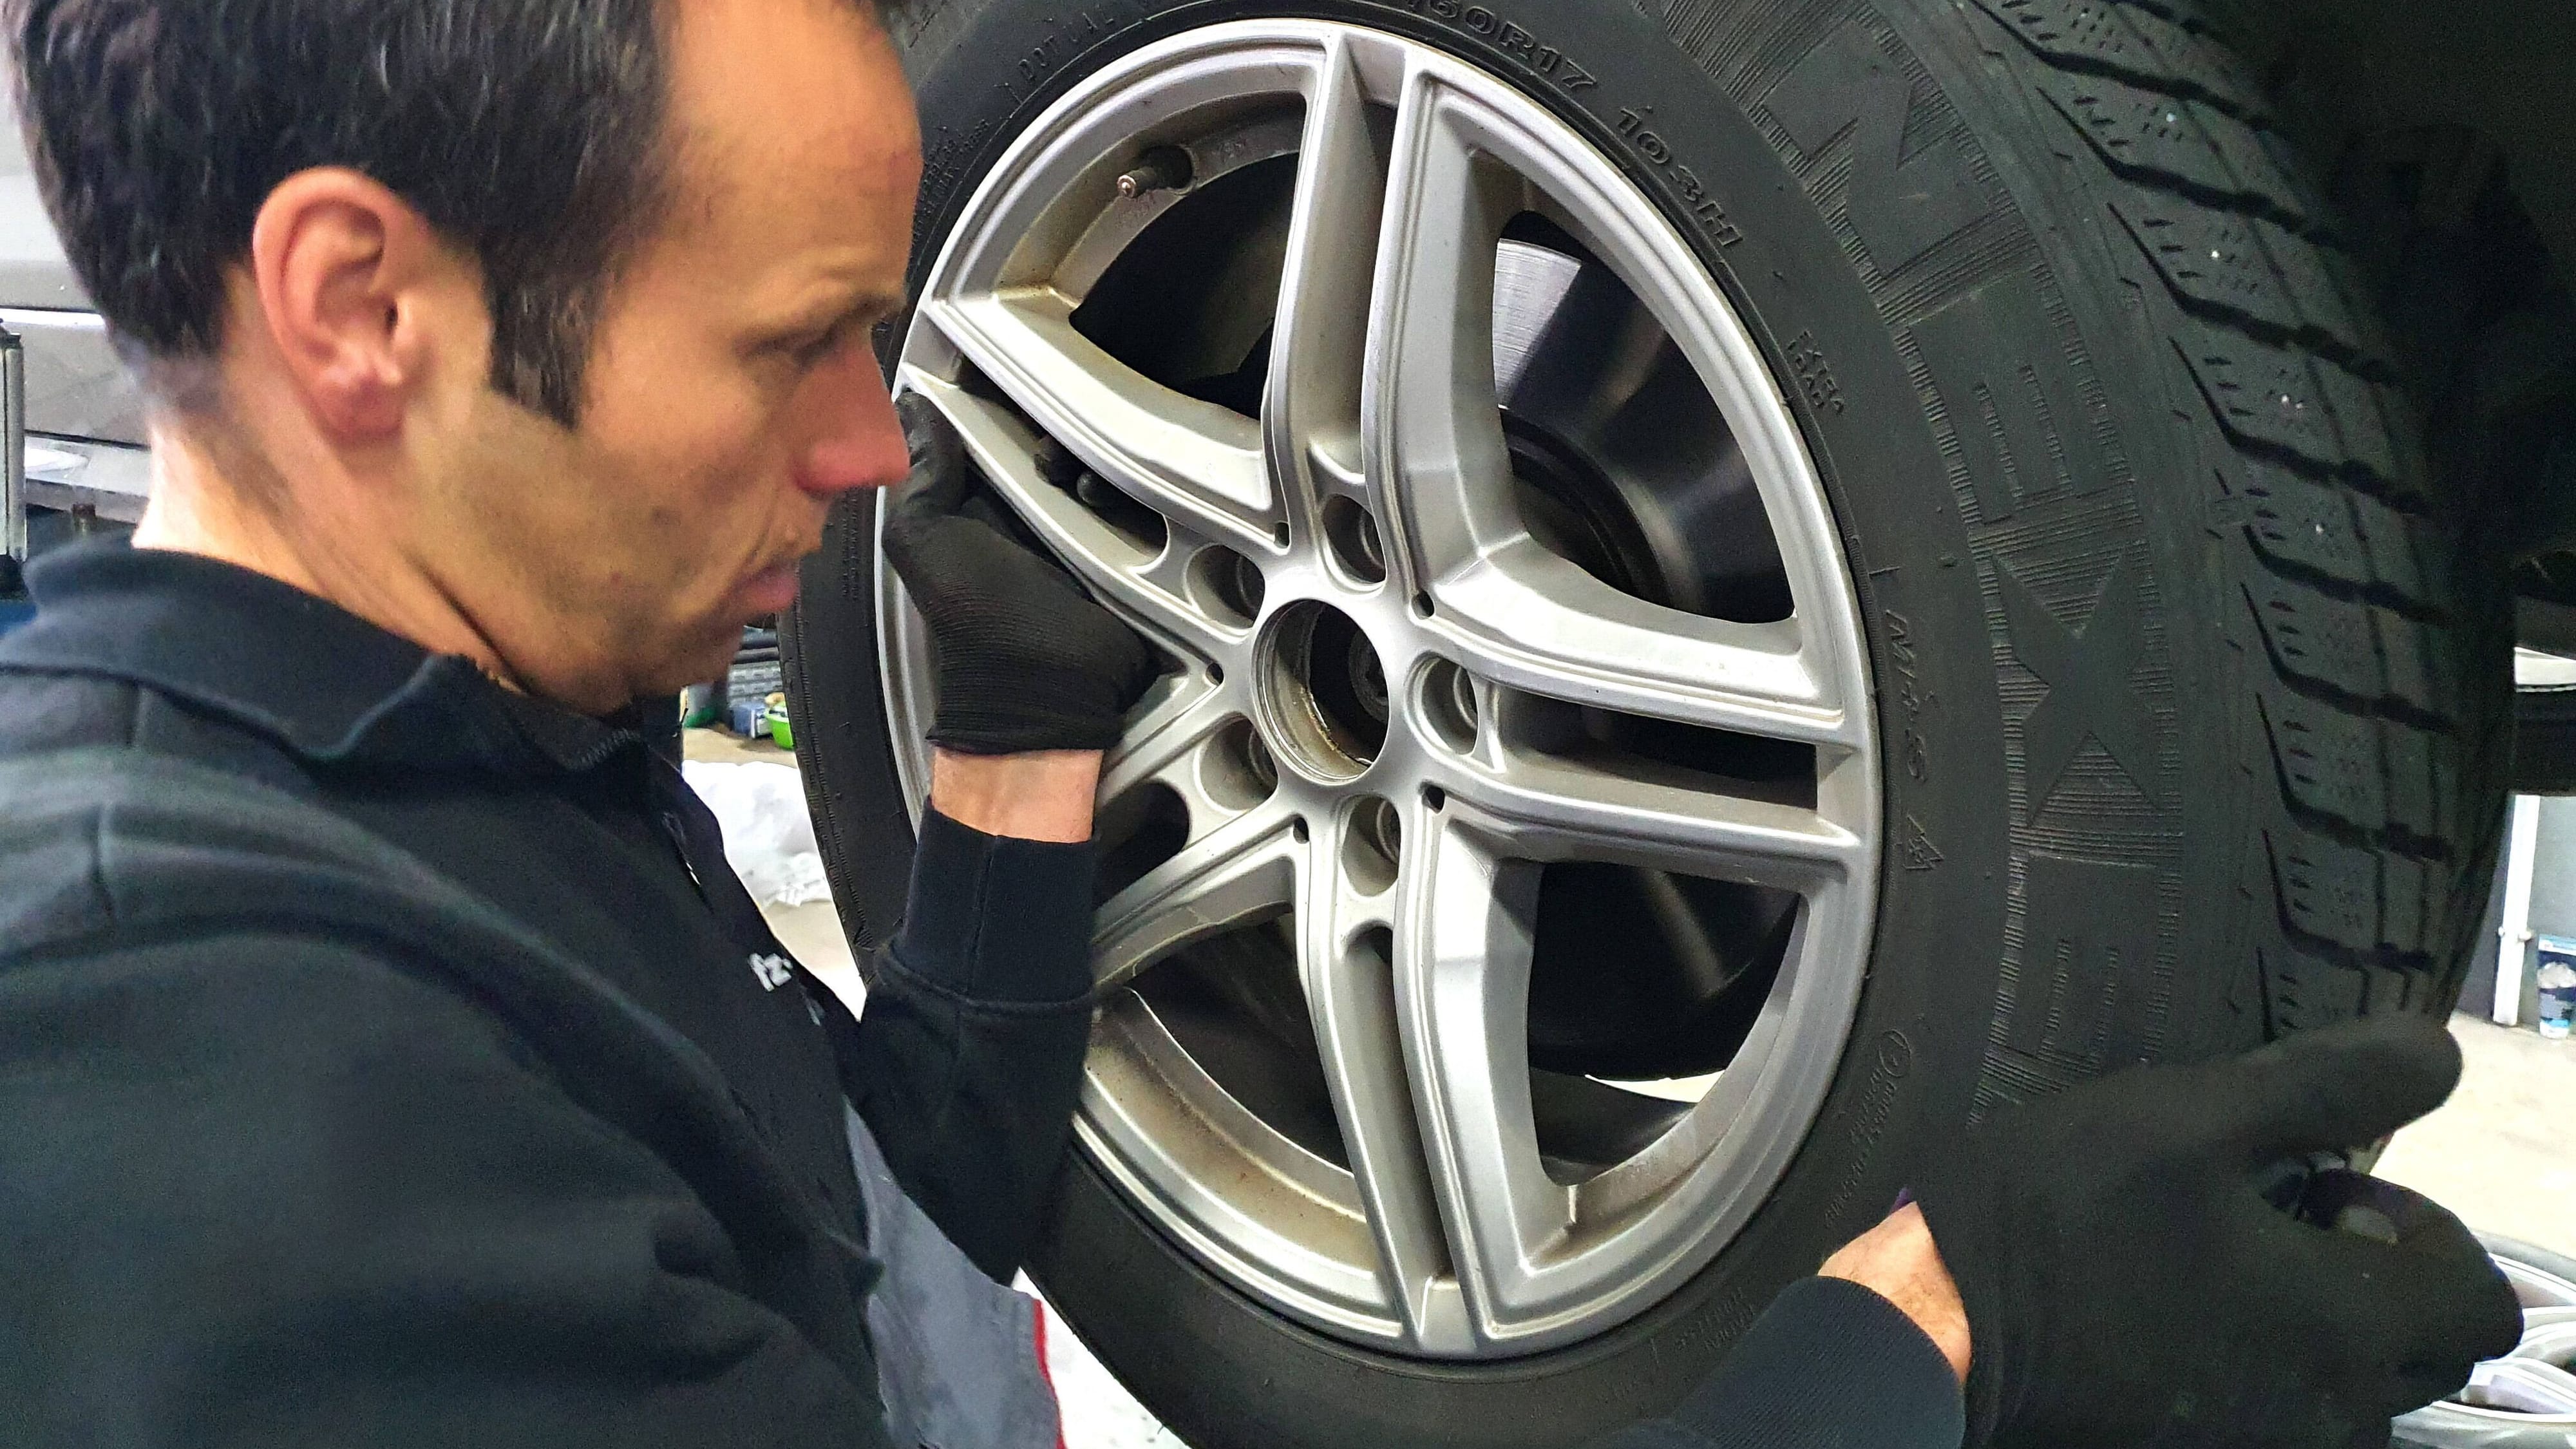 Autoreifen: Diesen zehn Reifenherstellern vertrauen Autofahrer am meisten